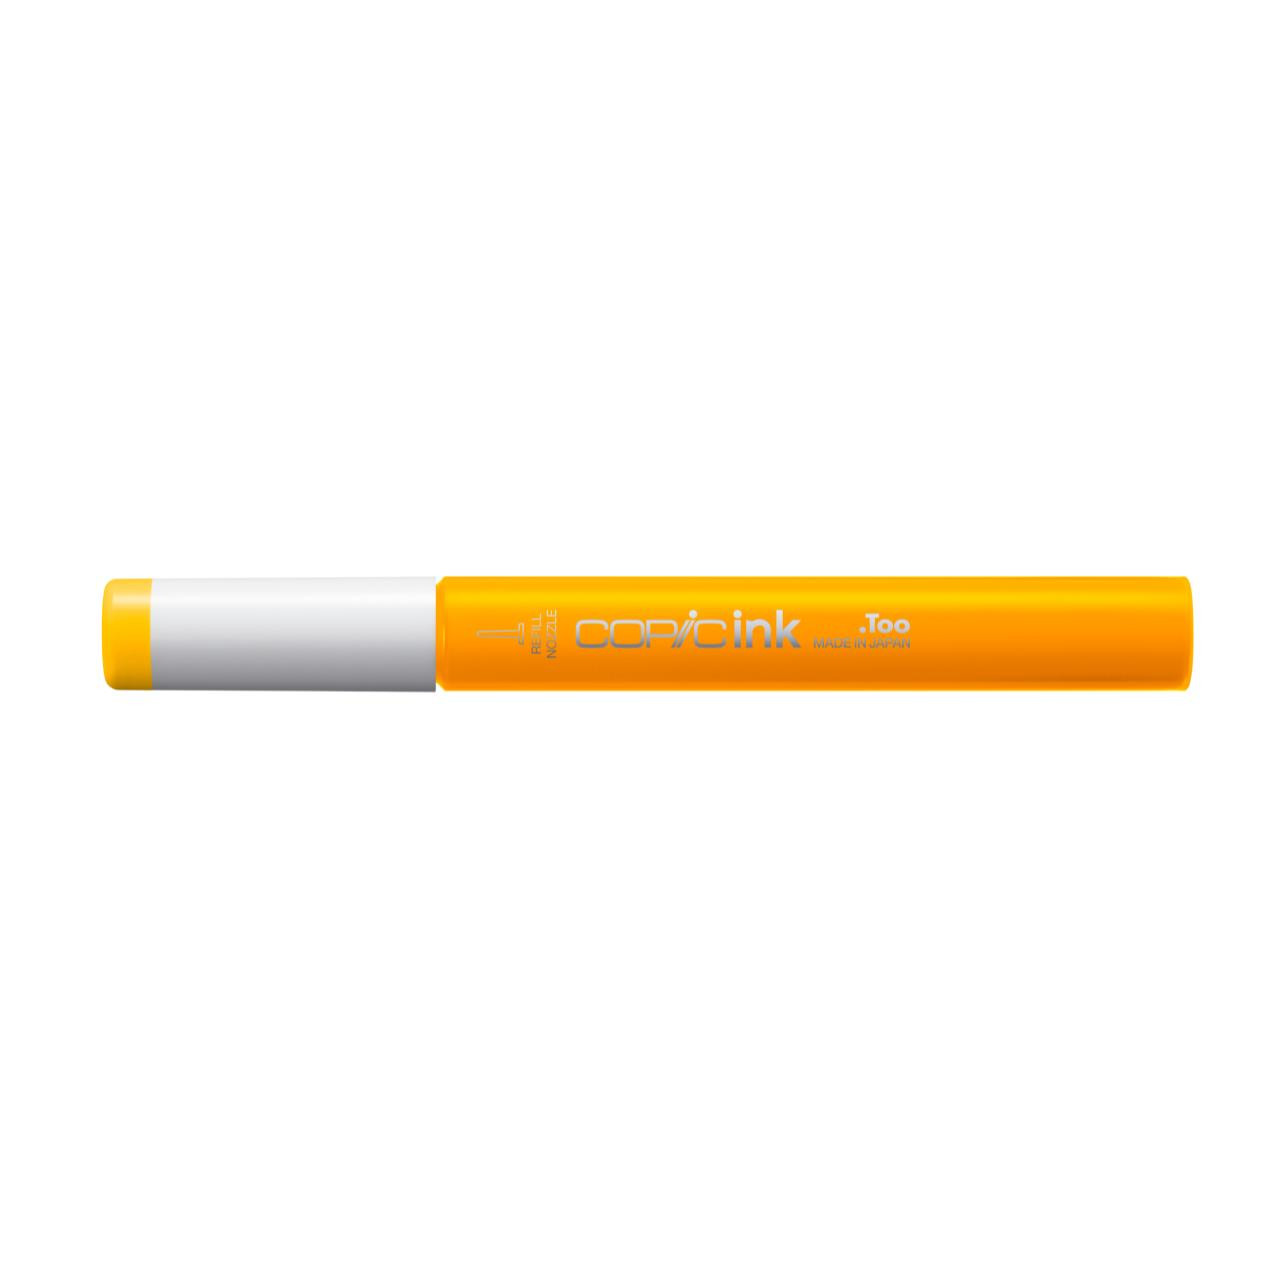 Заправка для маркеров COPIC 12 мл цв. FY1 желтый оранжевый флуоресцентный заправка для маркеров copic 12 мл цв fy1 желтый оранжевый флуоресцентный